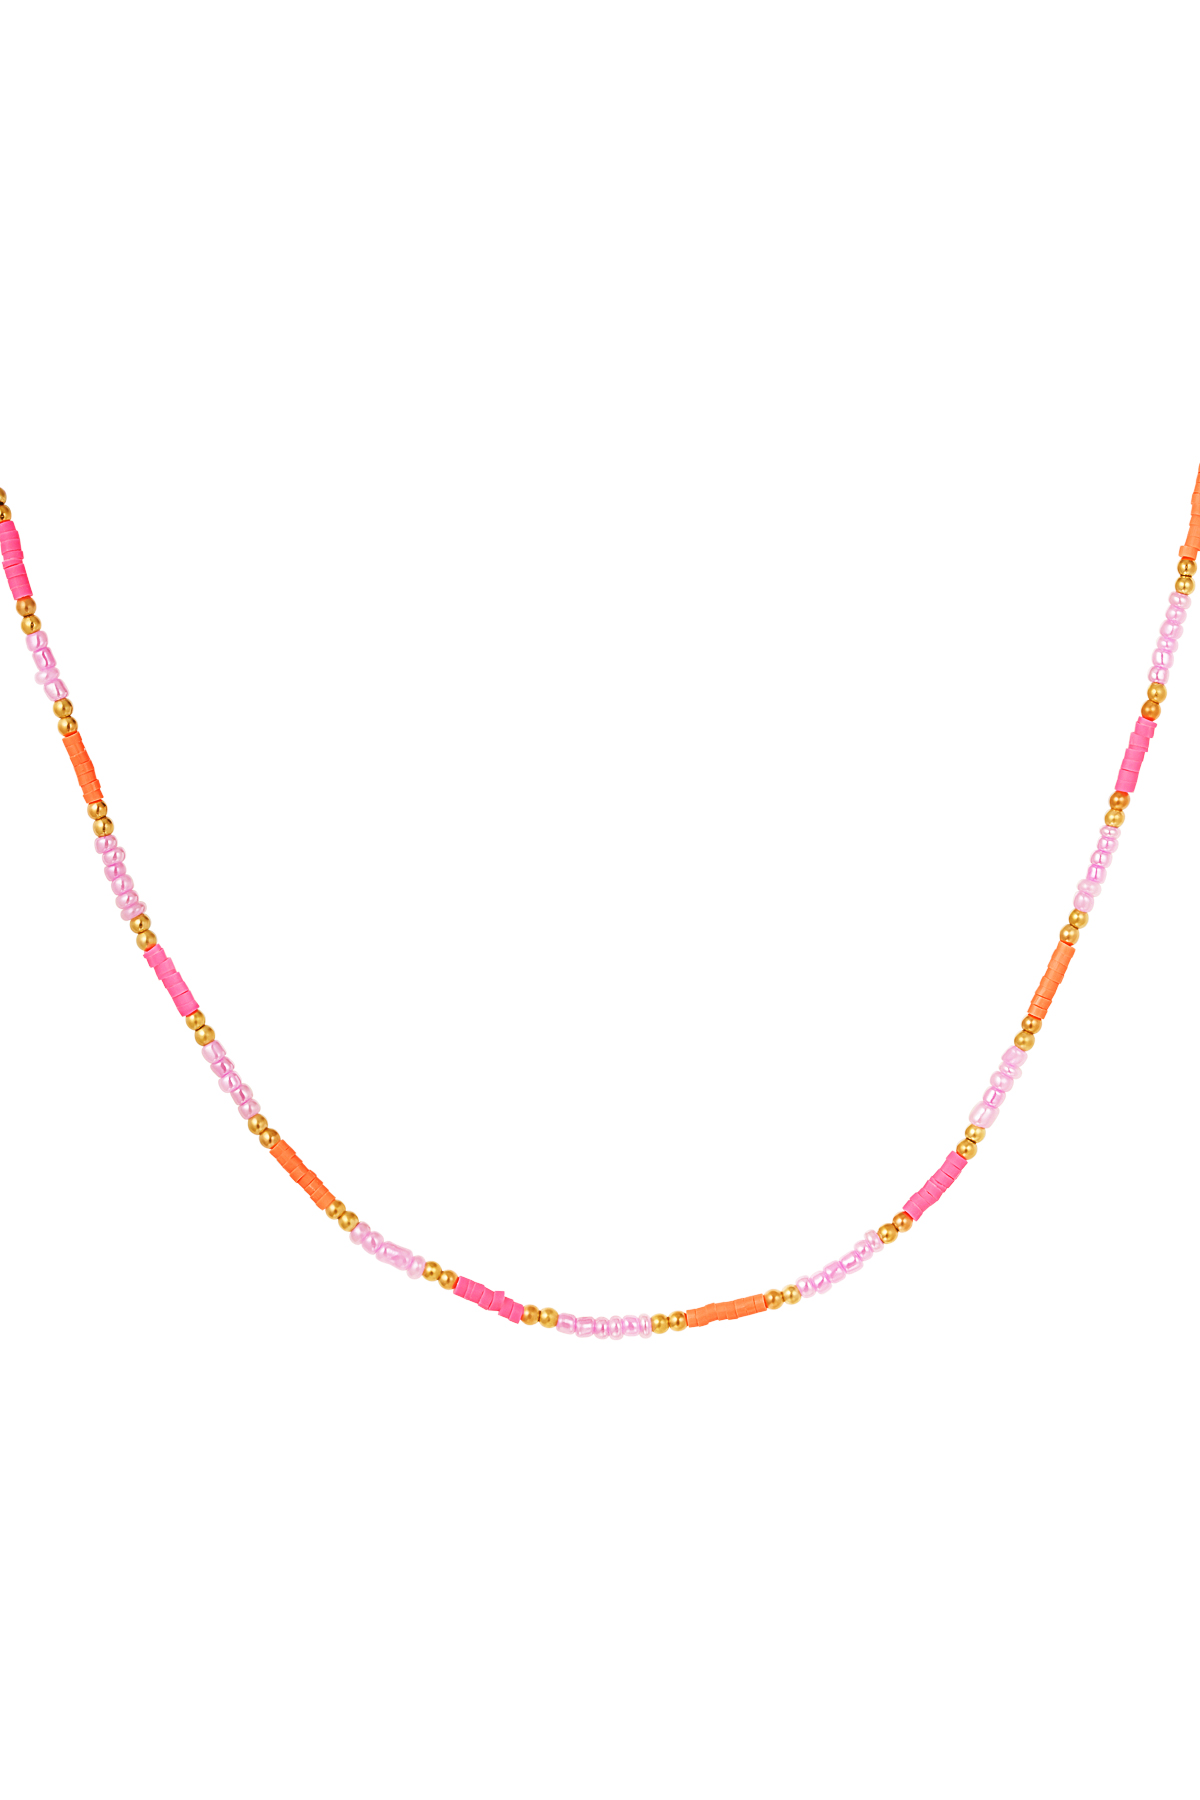 Collier petites perles colorées - rose/orange h5 